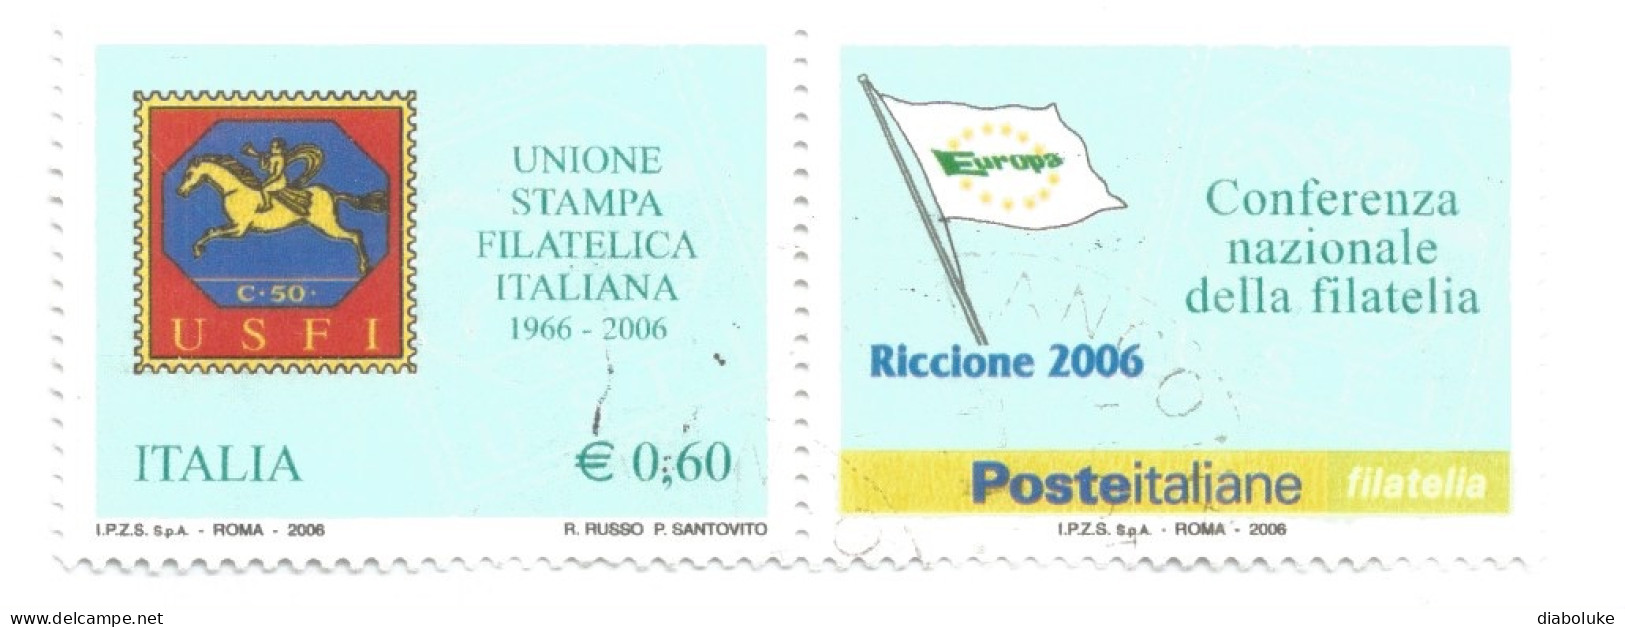 (REPUBBLICA ITALIANA) 2006, UNIONE STAMPA FILATELICA ITALIANA - Serie Di 1 Francobollo Usato Con Appendice - 2001-10: Usati